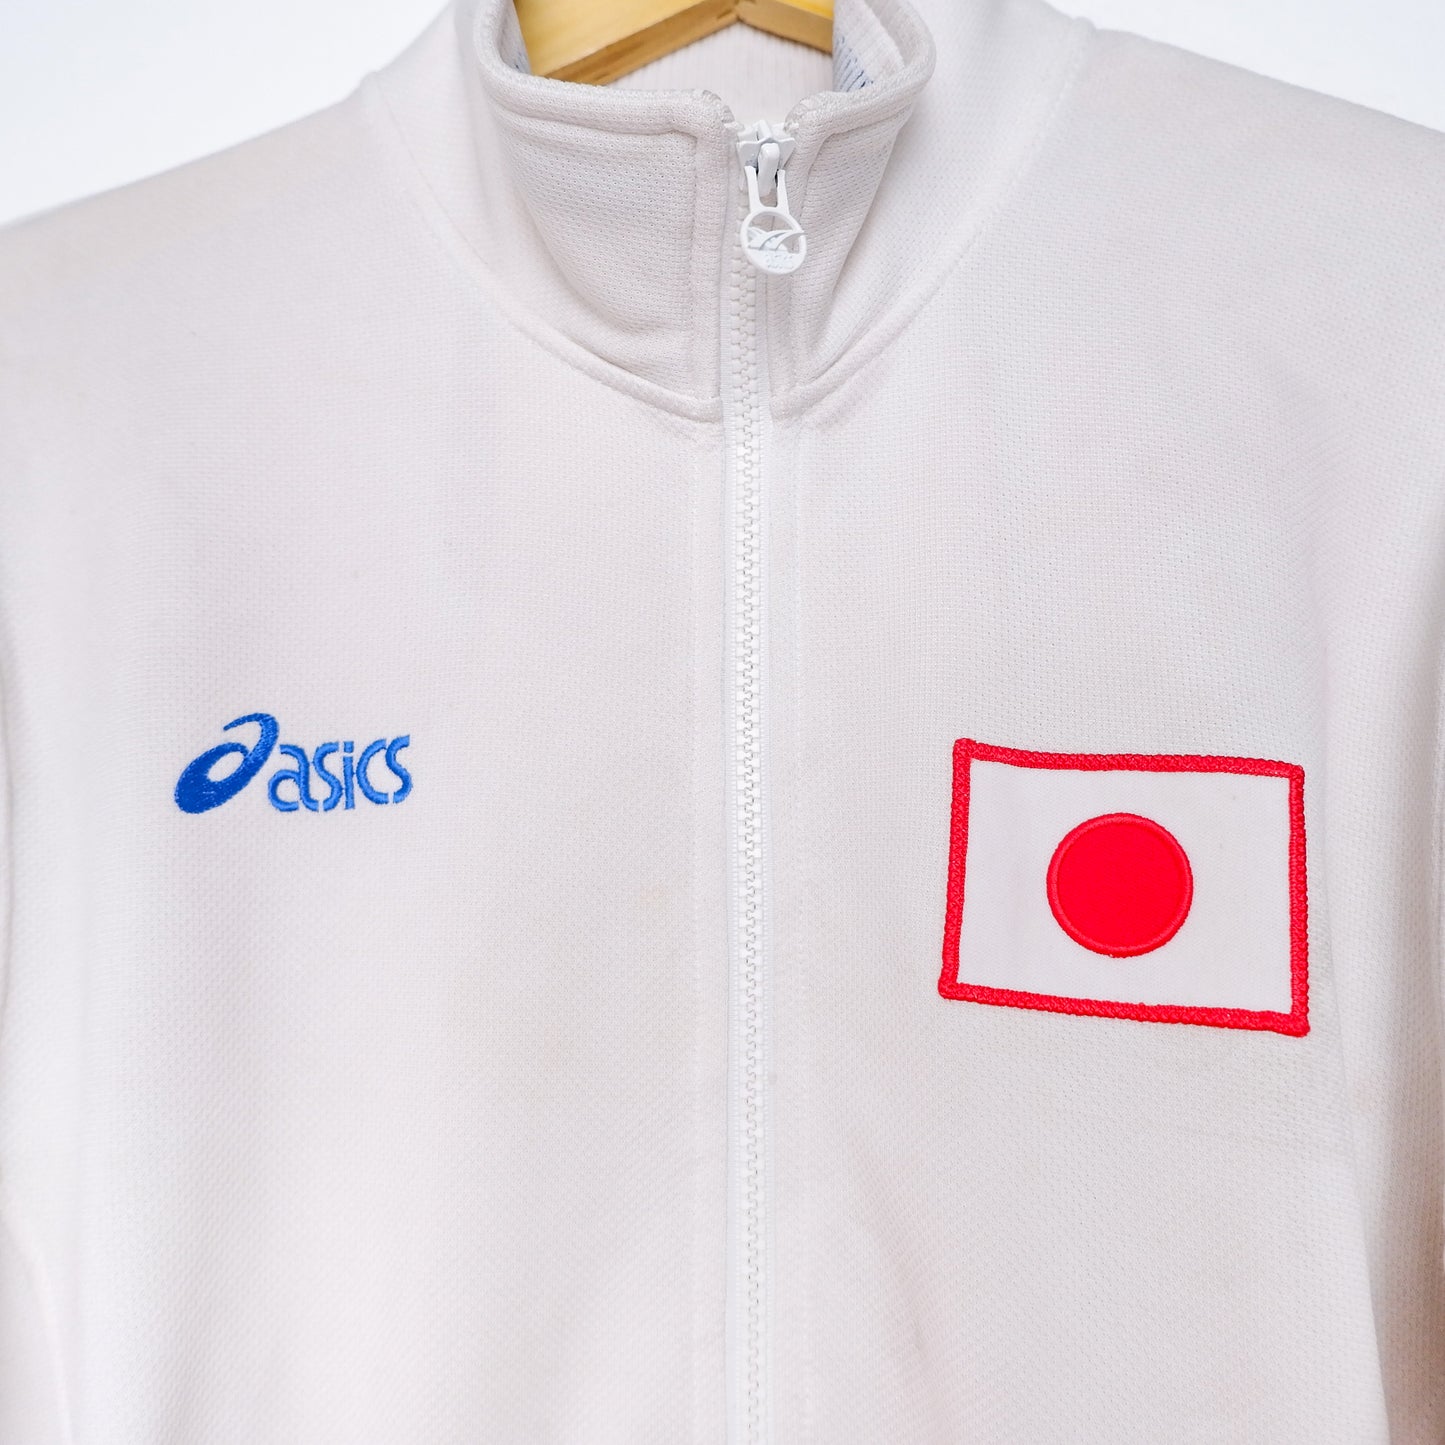 Authentic Japan Jacket 90's - Size L (JASPO) fit M